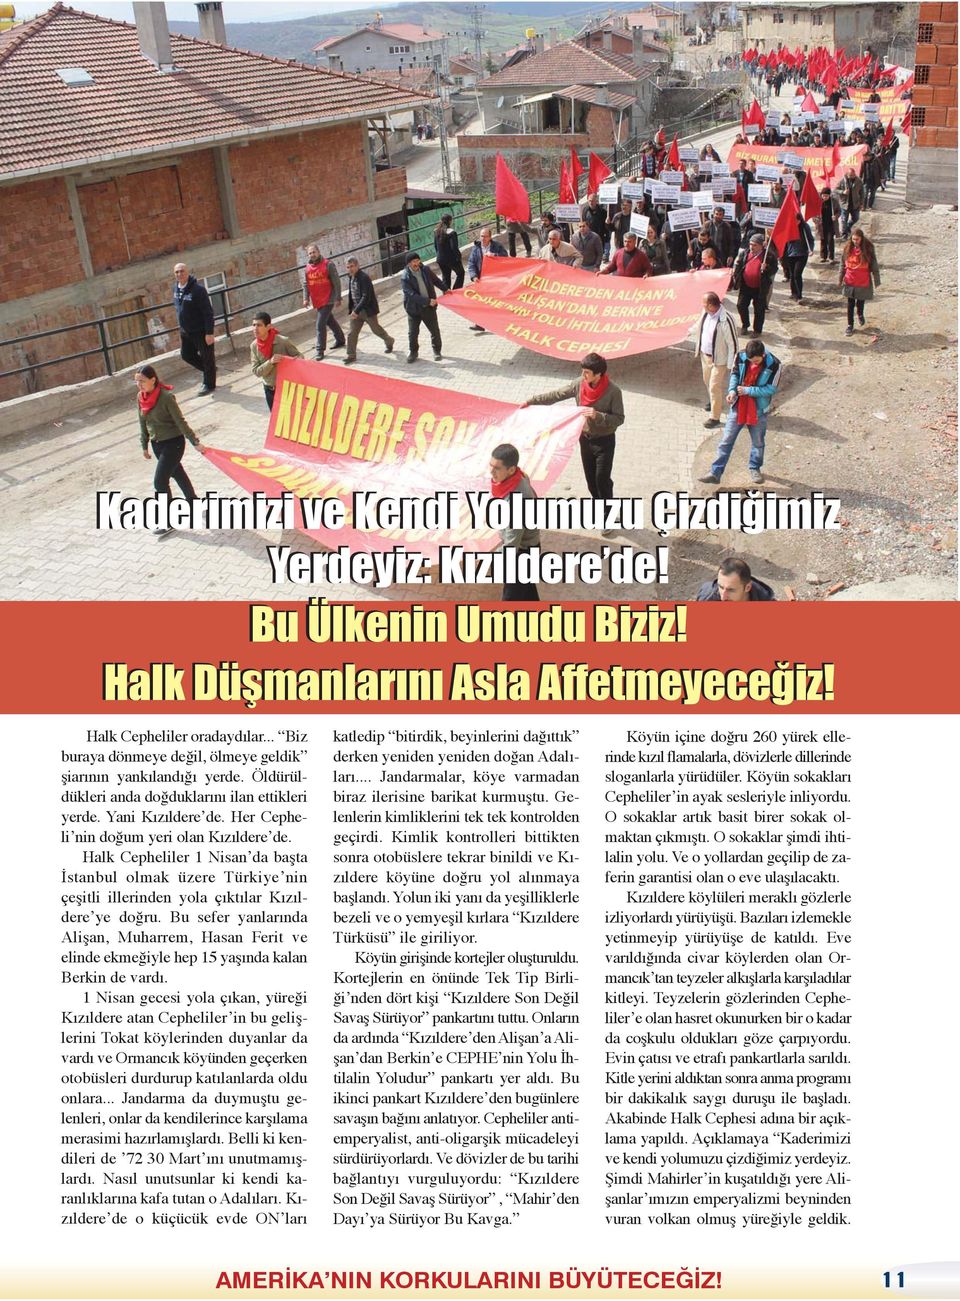 Halk Cepheliler 1 Nisan da başta İstanbul olmak üzere Türkiye nin çeşitli illerinden yola çıktılar Kızıldere ye doğru.